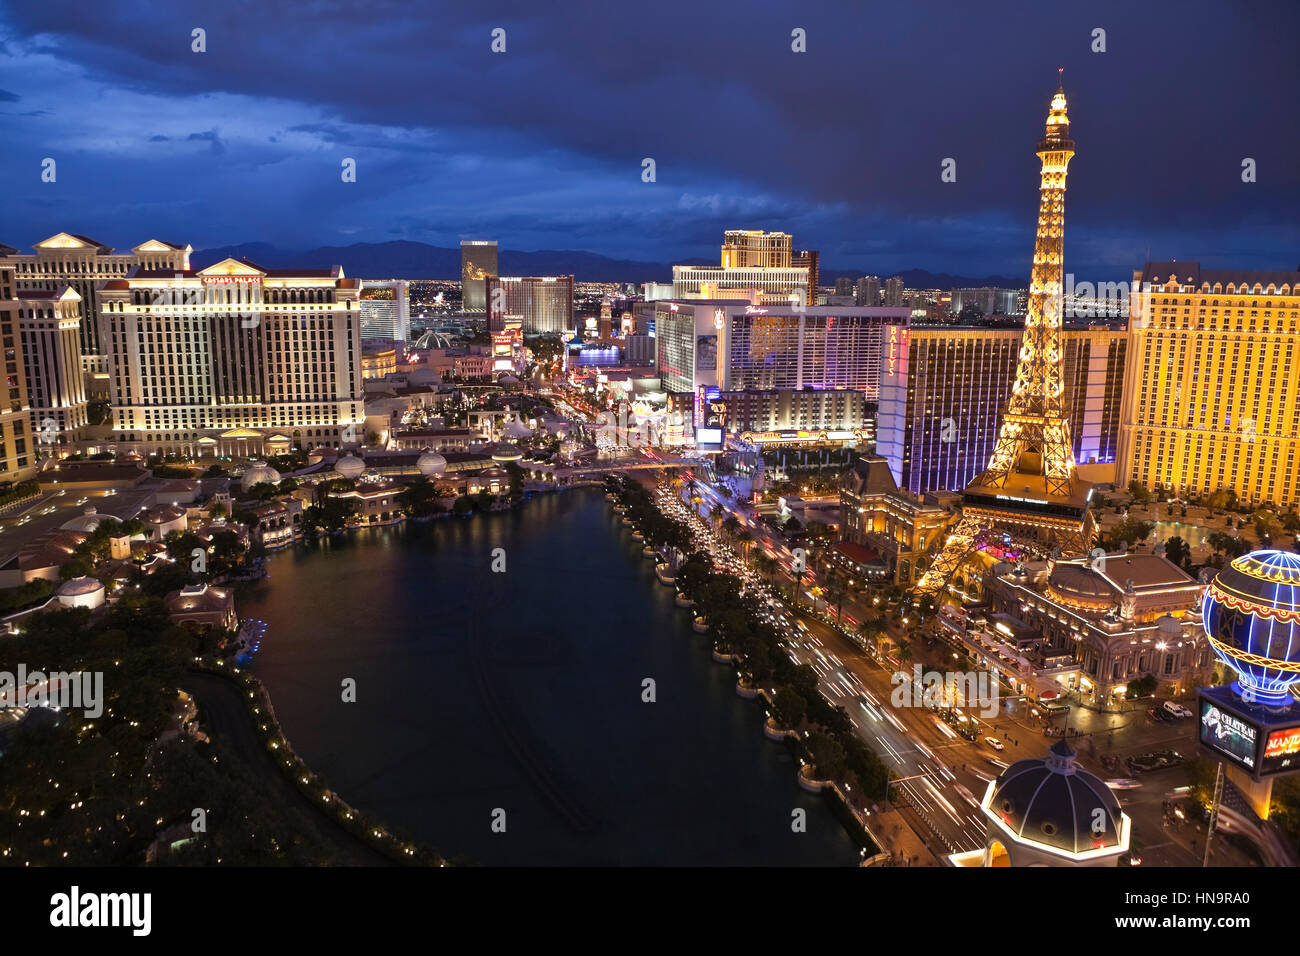 Las Vegas, Nevada, USA - 6 octobre, 2011 : nuit vue vers Bellagio, Paris, Caesars Palace et d'autres hôtels sur le Strip de Las Vegas. Banque D'Images